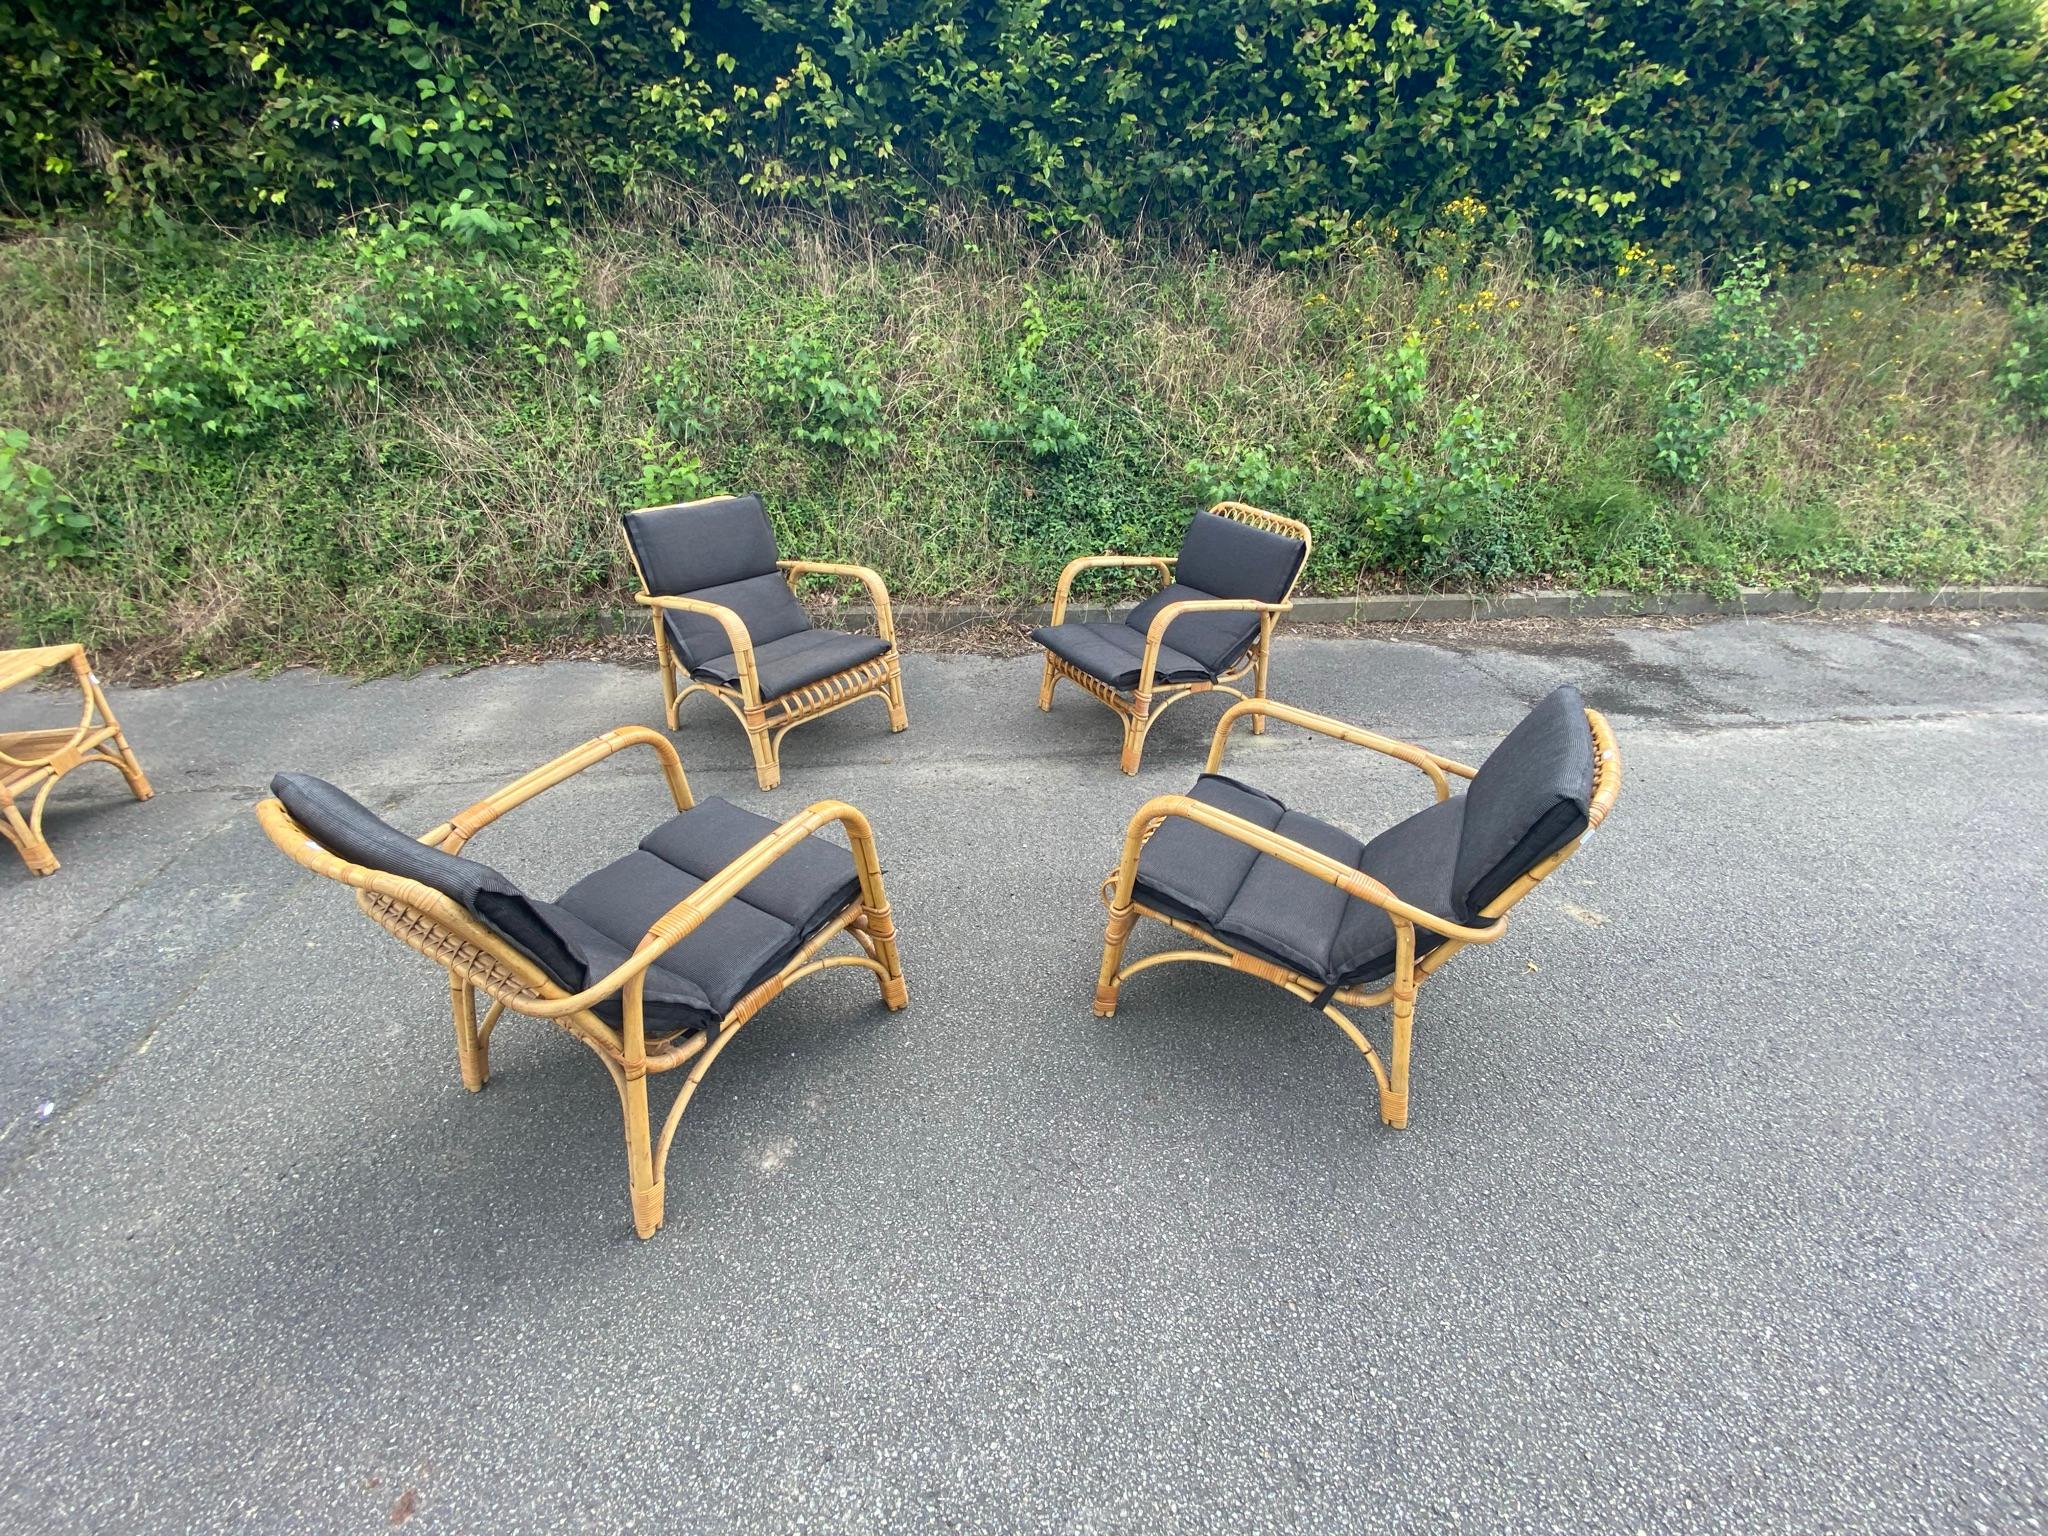 4 rattan armchairs and their cushions, circa 1970-1980.